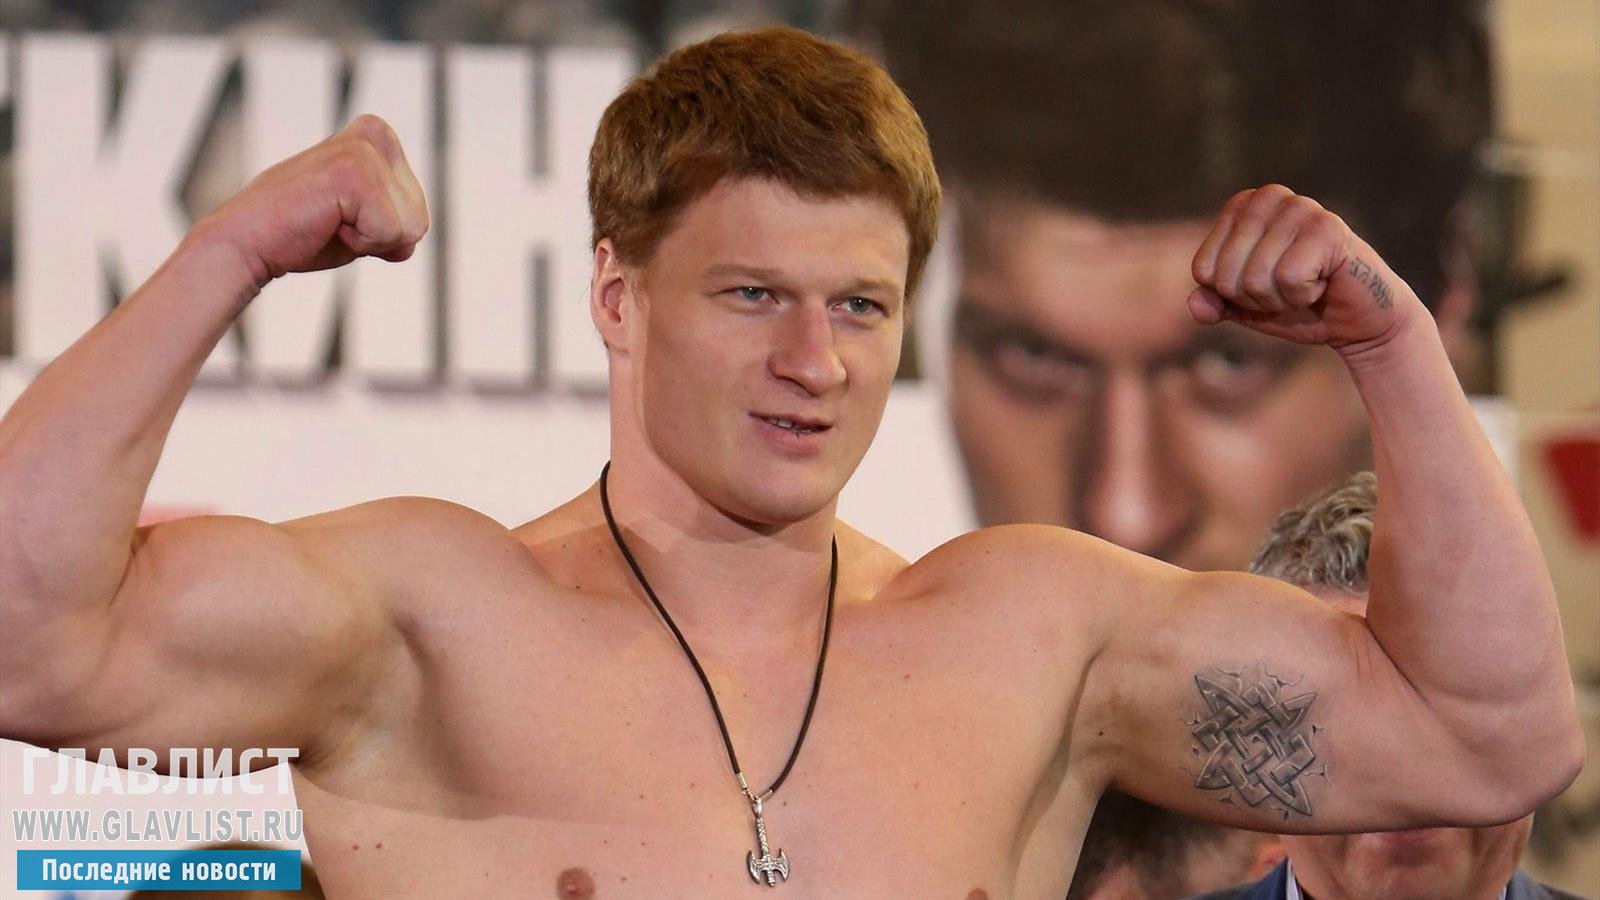 СМИ говорили о благоприятной допинг-пробе боксера Поветкина